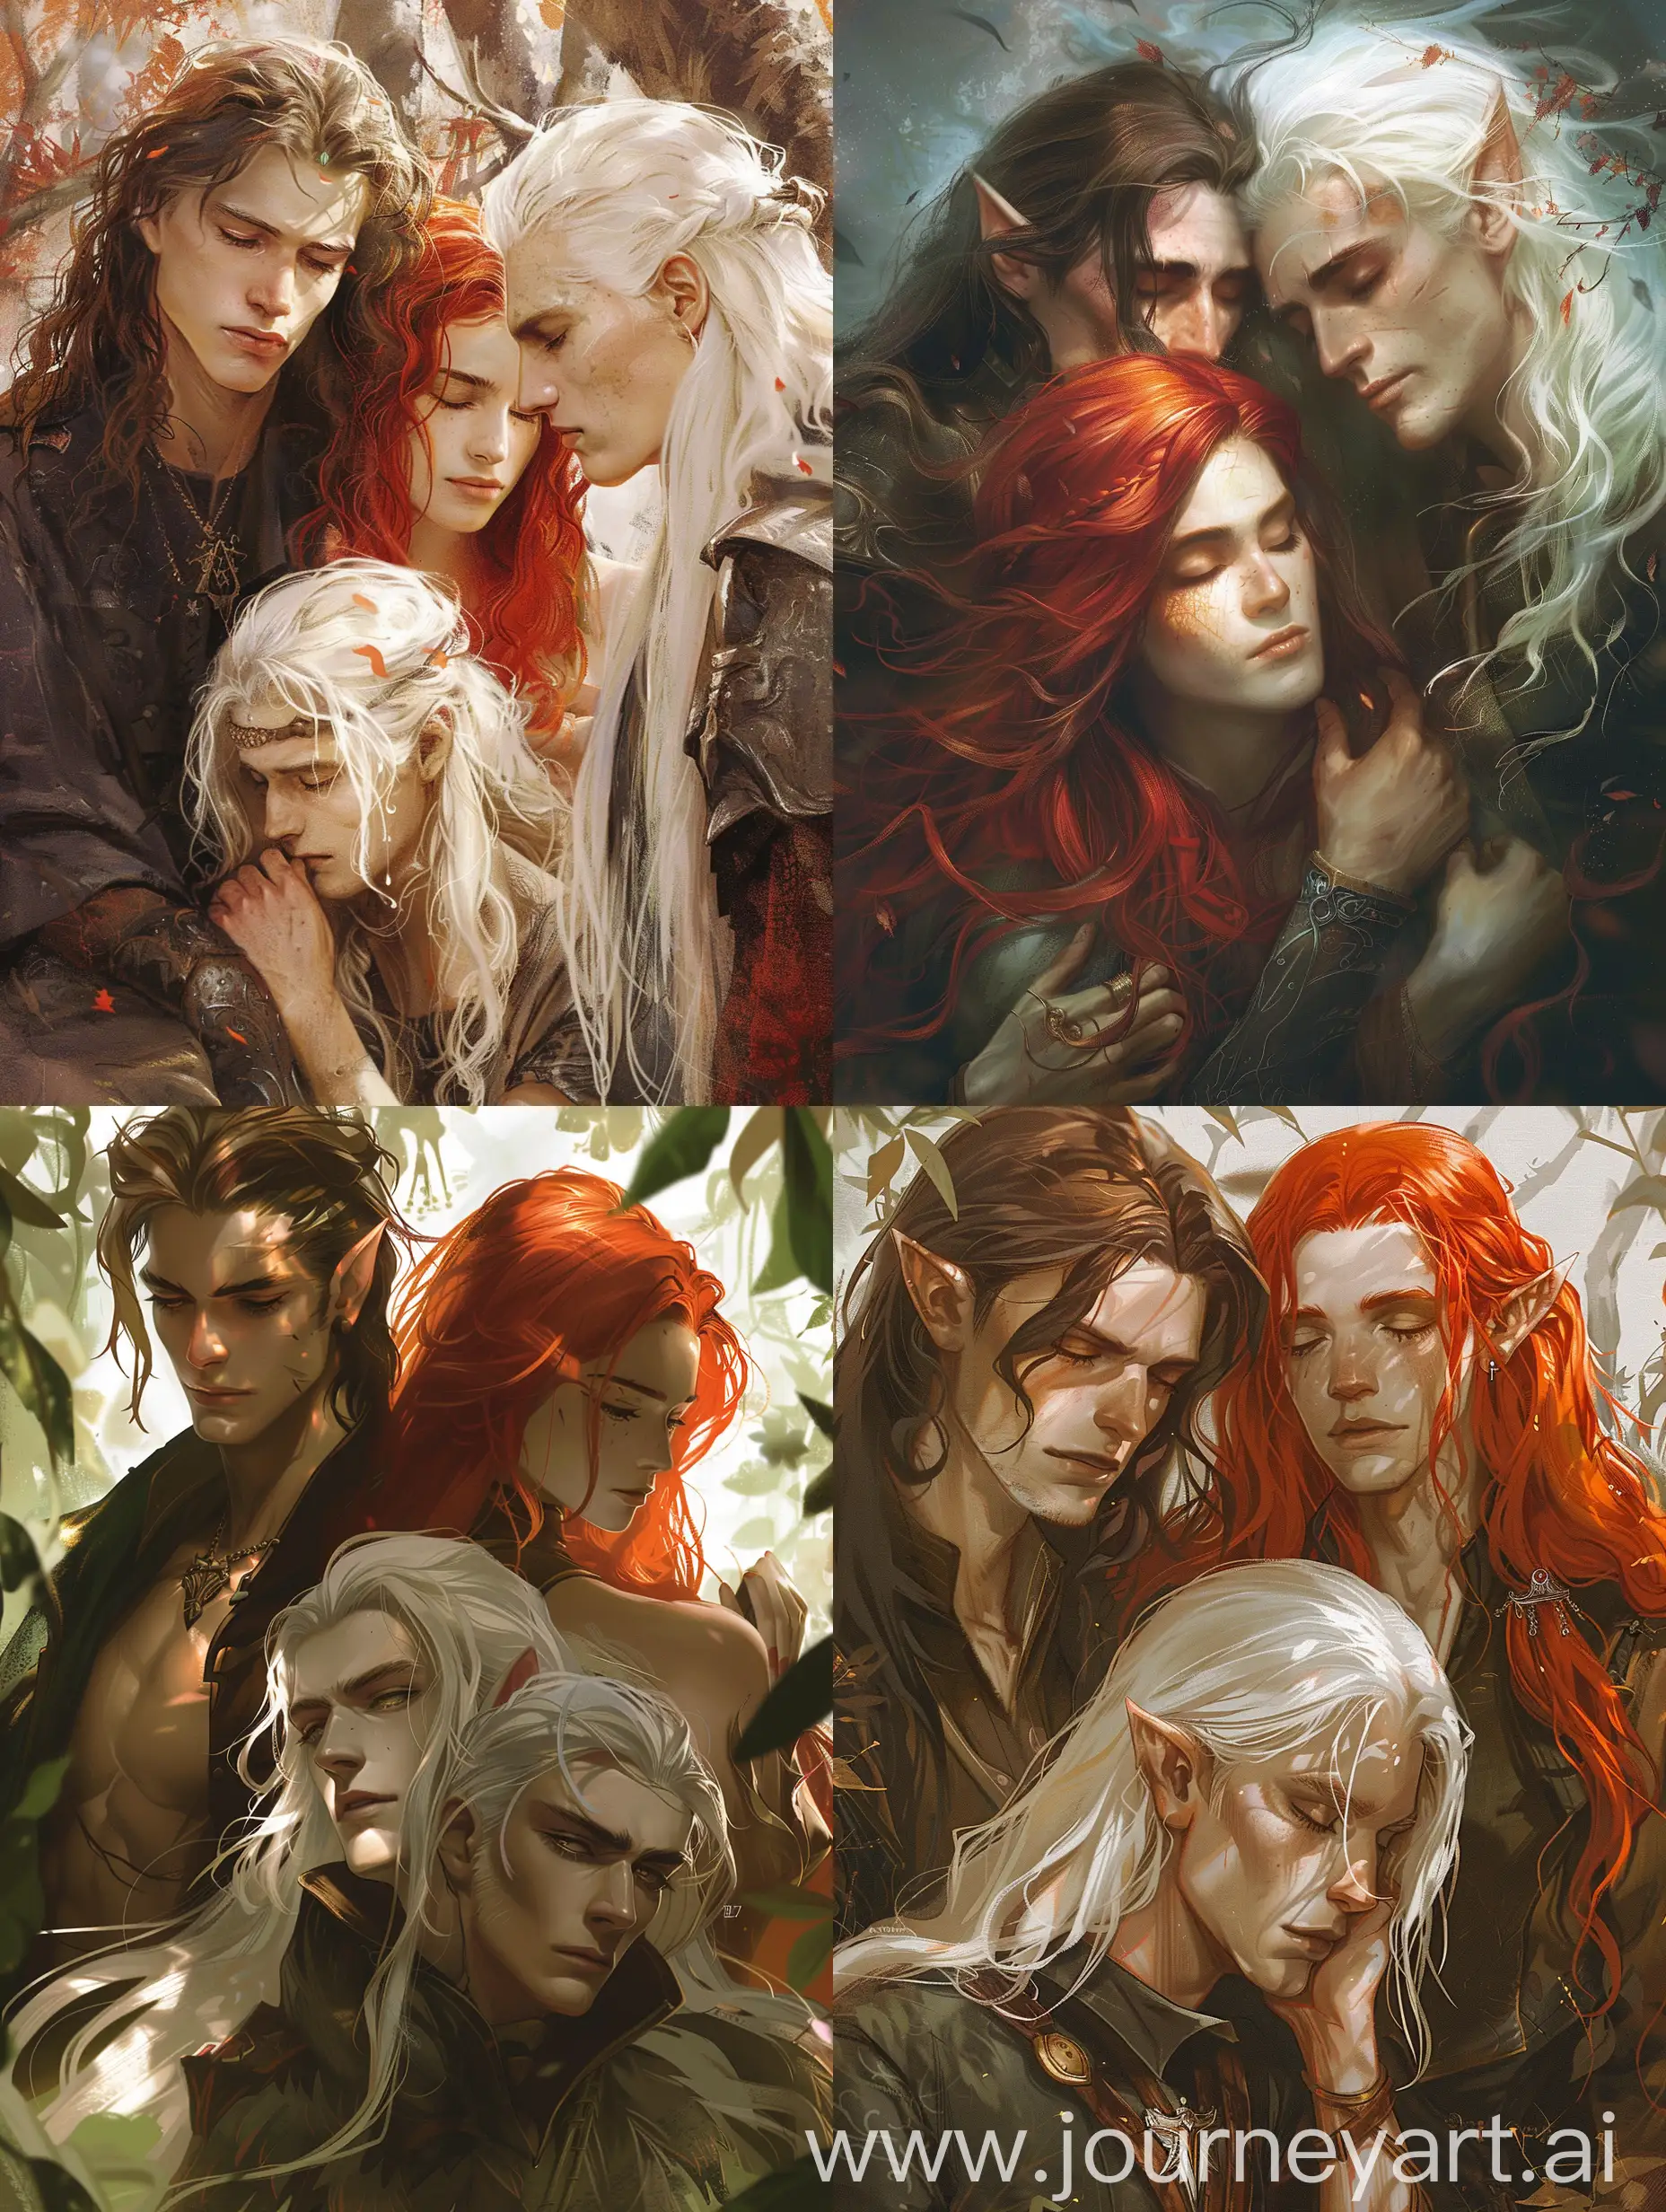 fantasy, парень  брюнет, и девушка среди них с рыжыми волосами, и другой парень с белыми длинными волосами